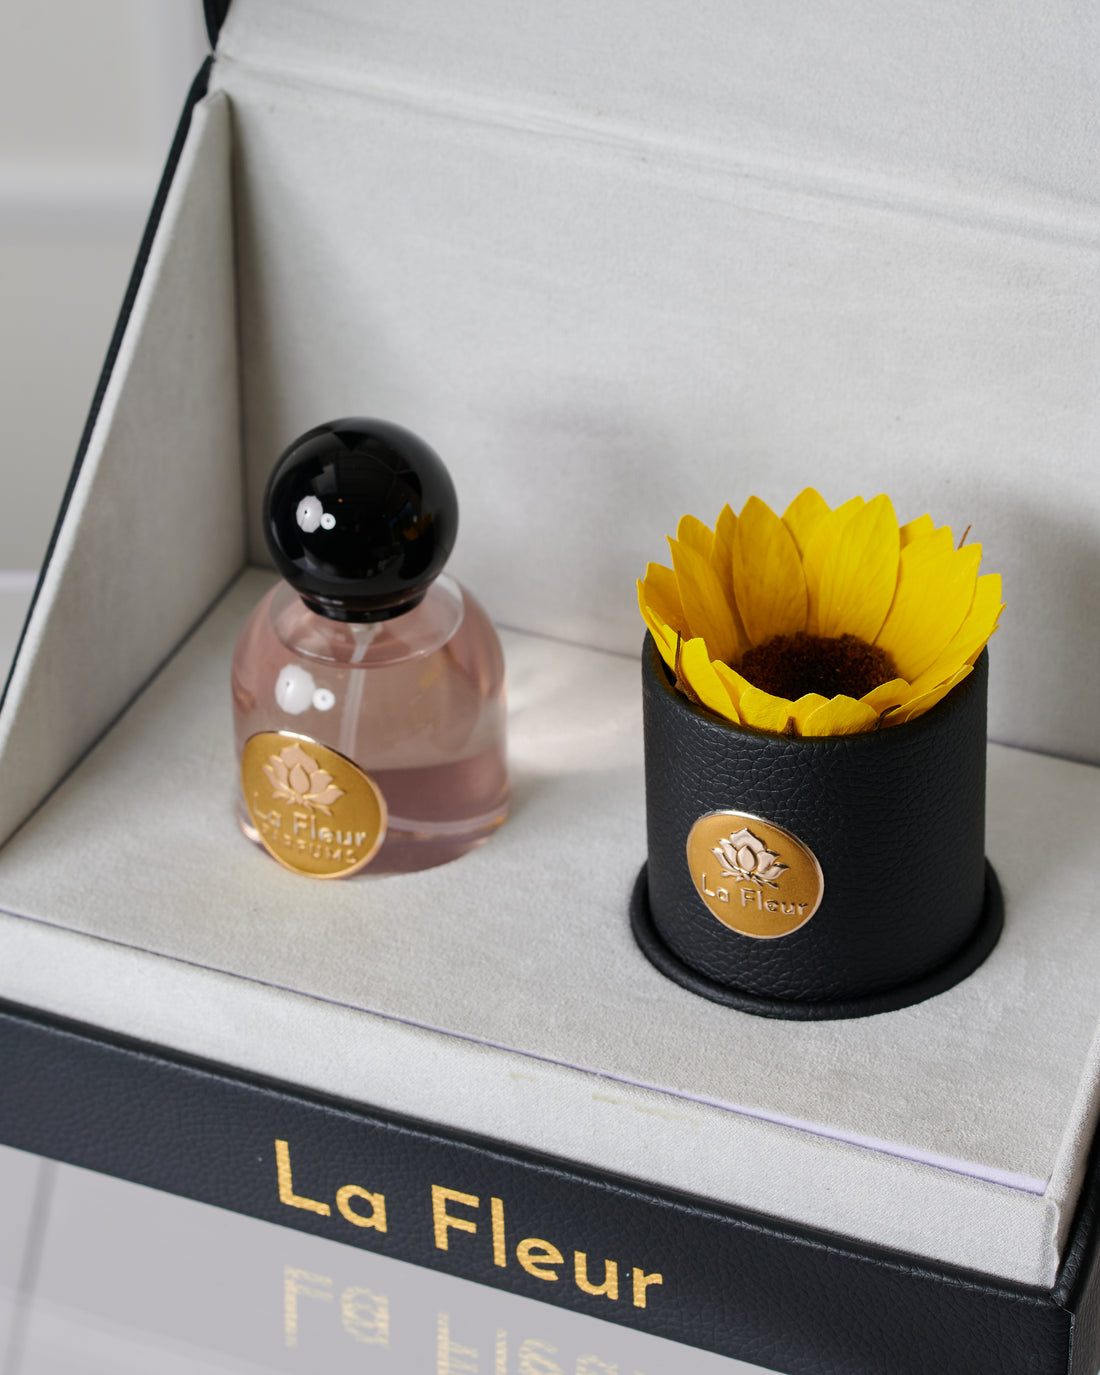 Signature Gift Set - Sunflower by La Fleur Lifetime Flowers